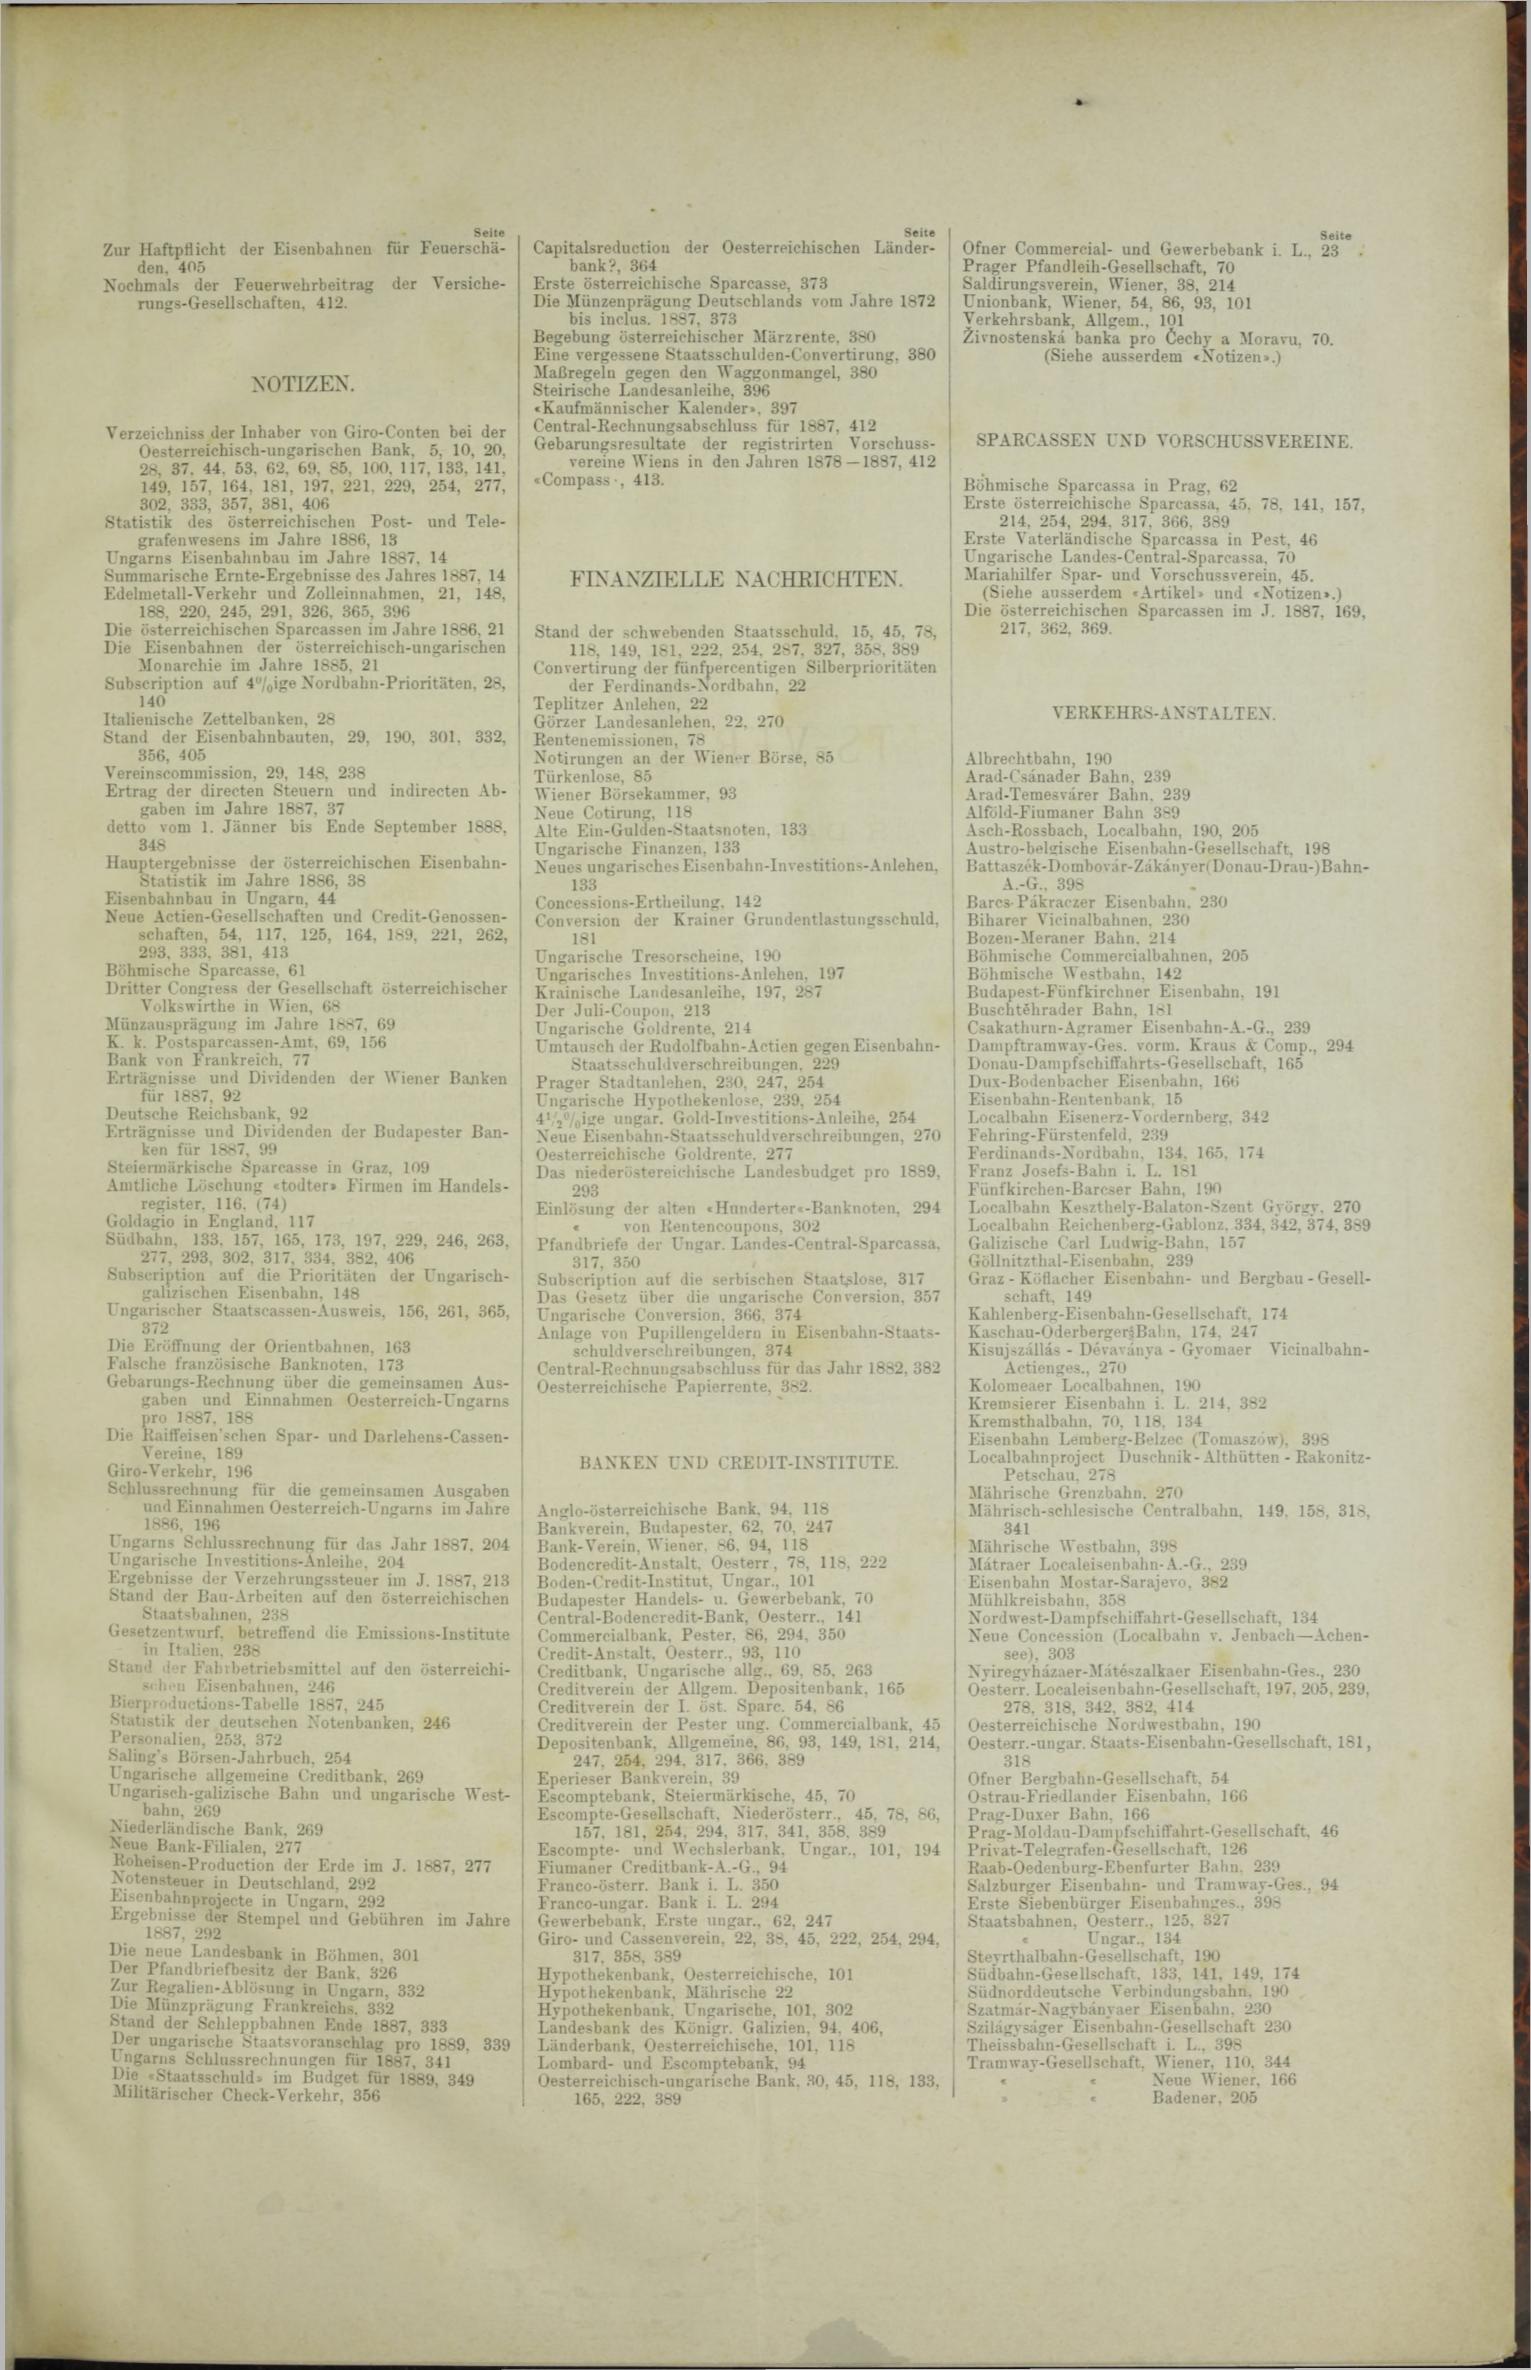 Der Tresor 12.04.1888 - Seite 11